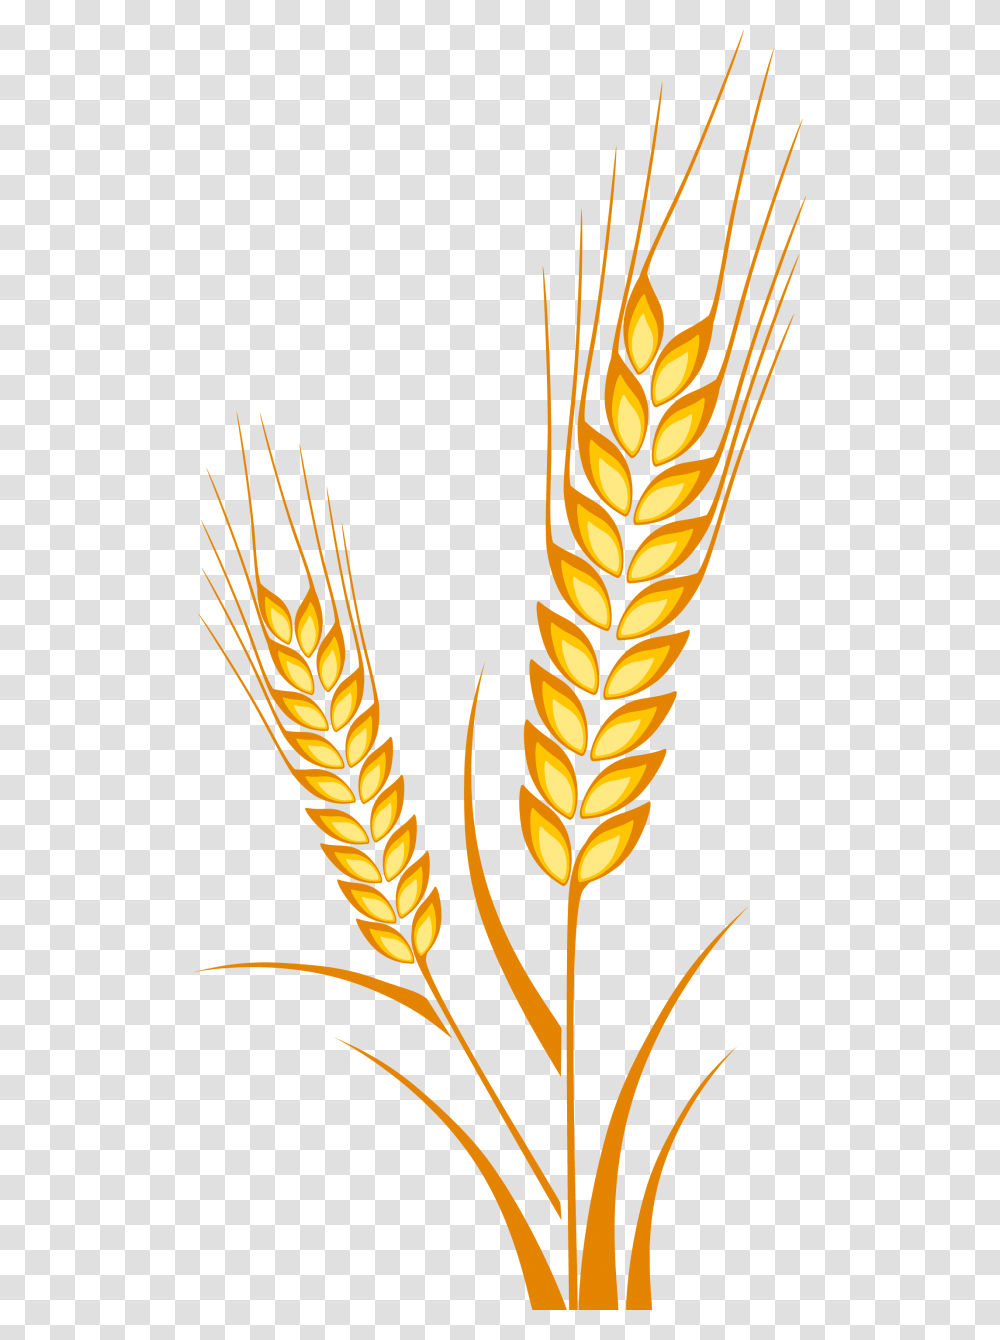 Vector Free Crops Drawing Cereal Grain Espiga De Trigo Dibujo, Plant, Pineapple, Fruit, Food Transparent Png